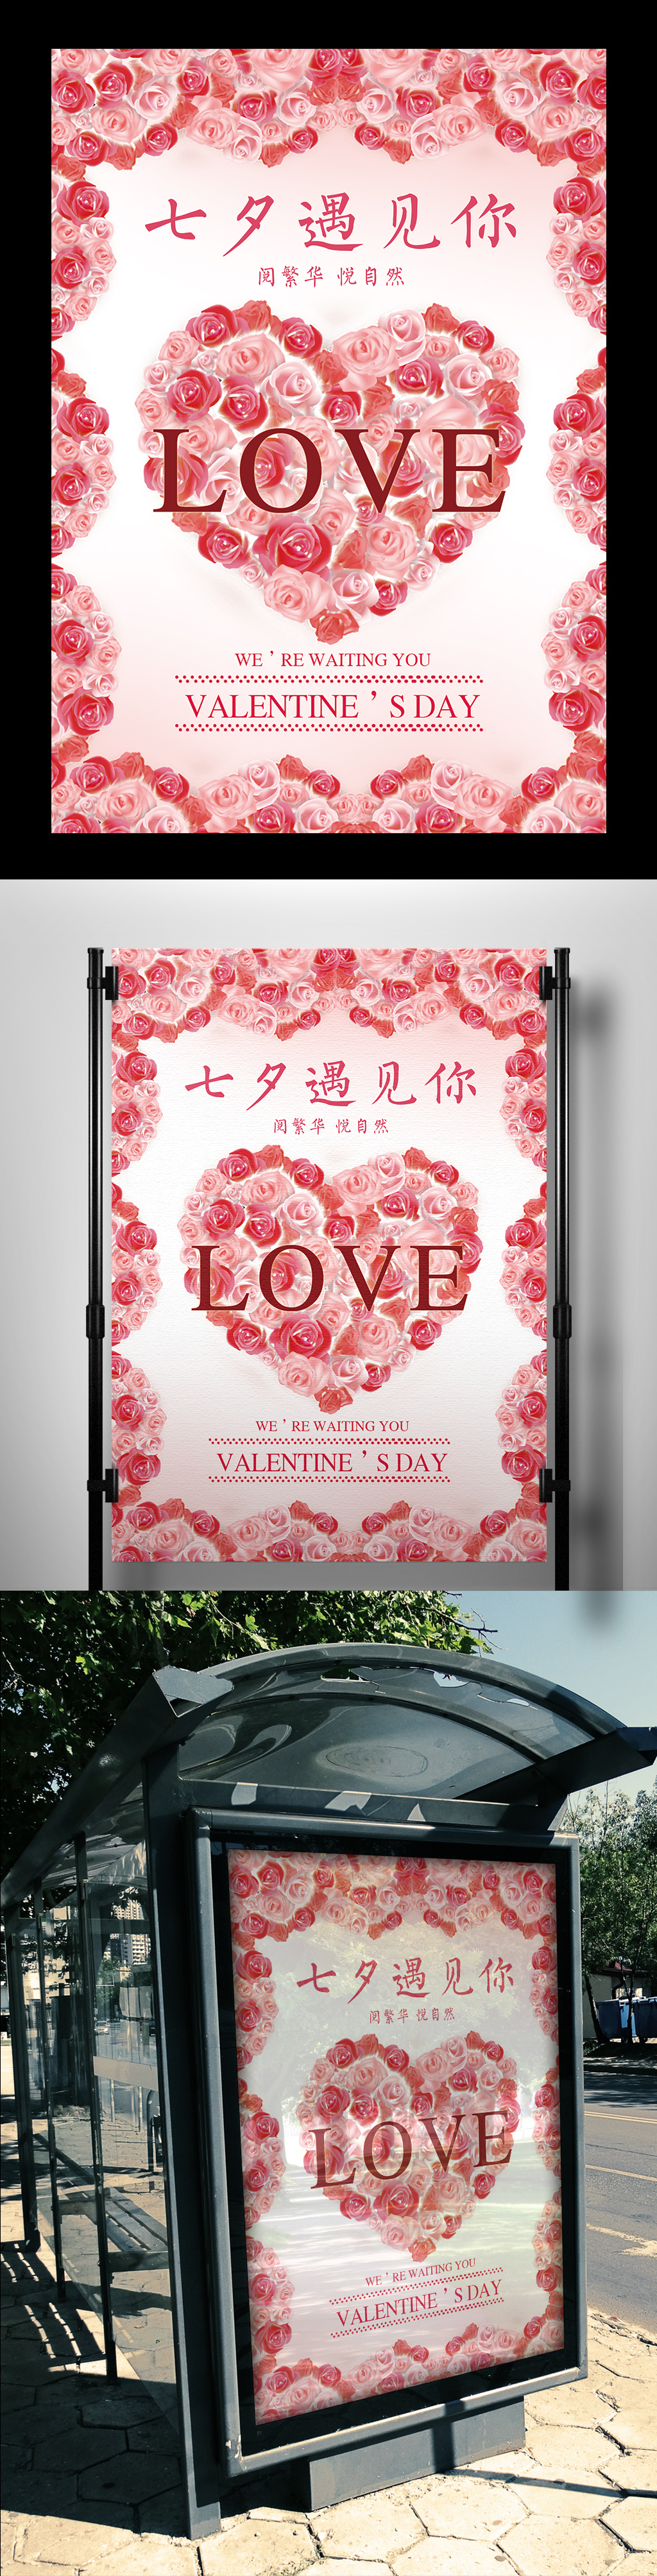 浪漫七夕玫瑰花爱情主题宣传海报图片